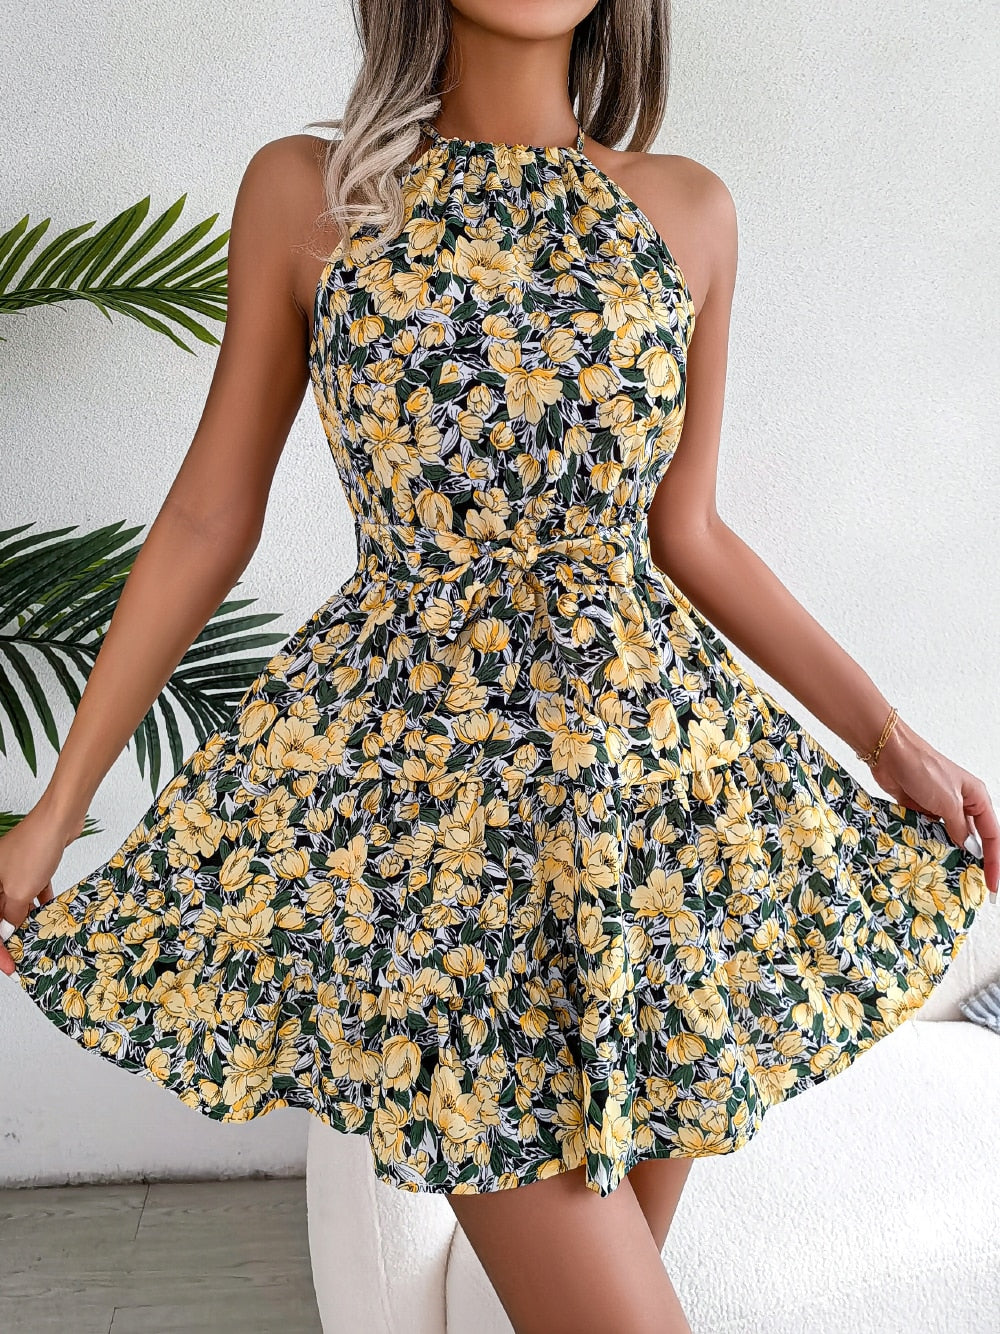 Women Summer Casual Floral Print Ruffle Halter Dress